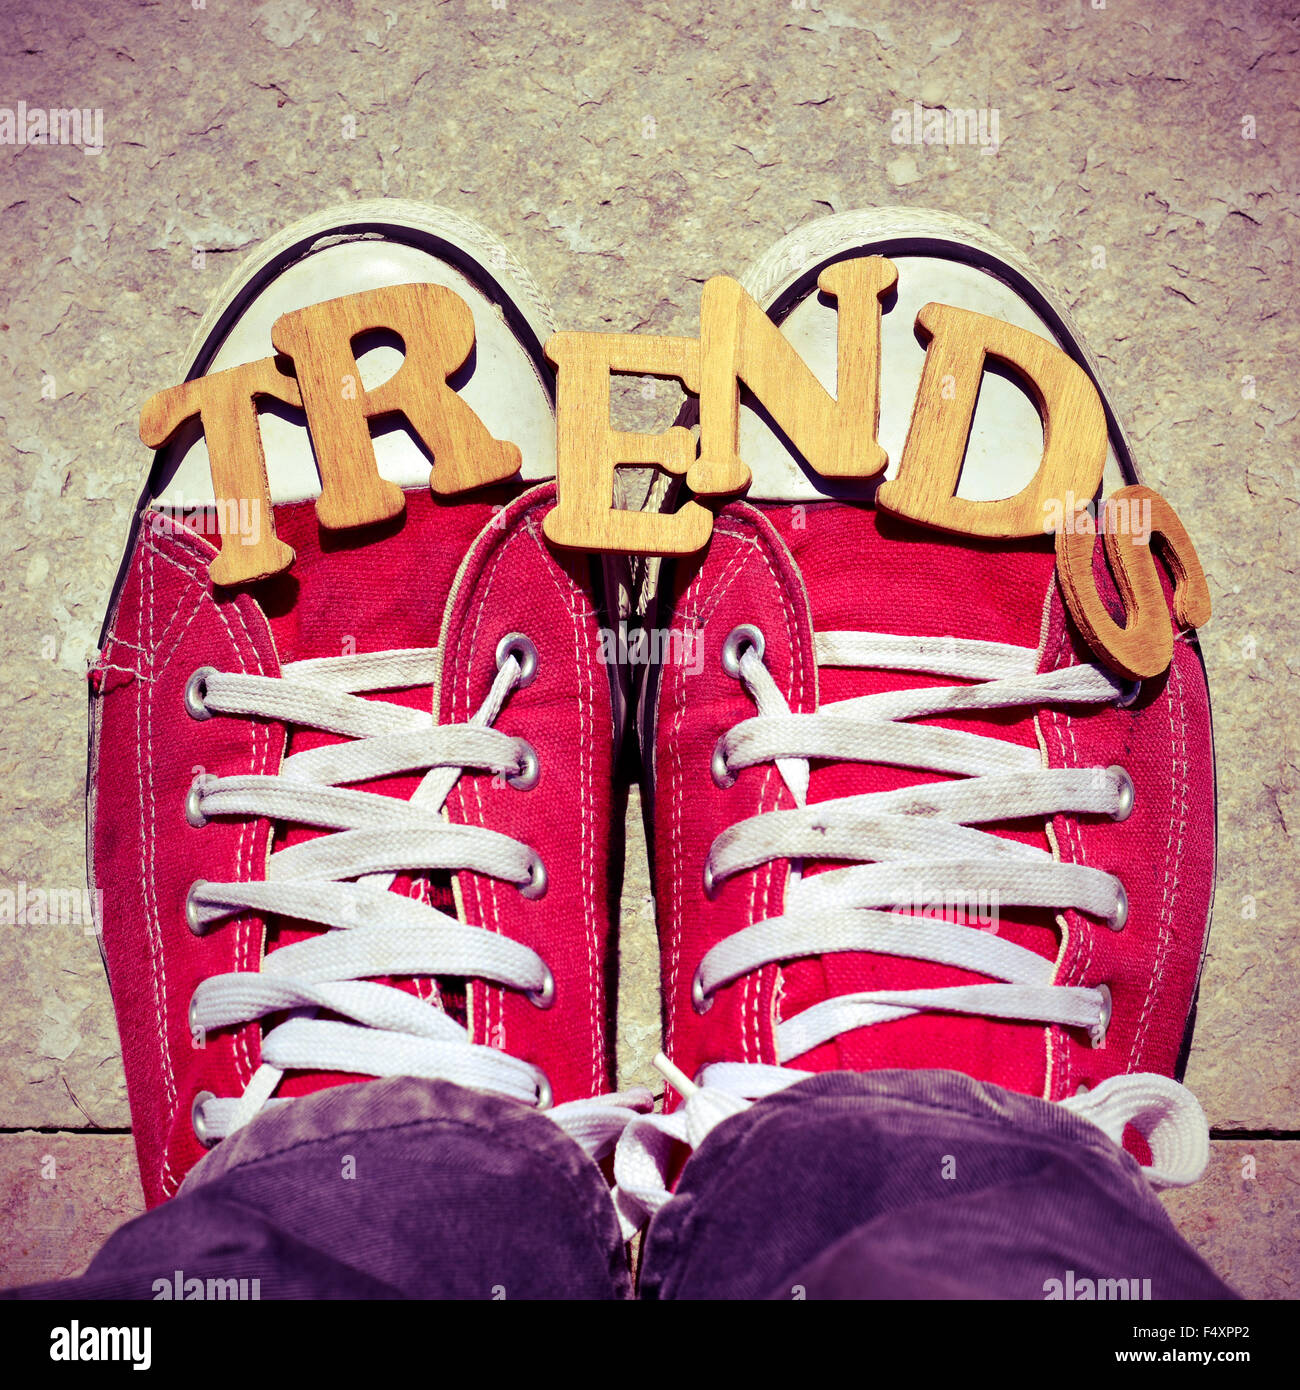 Zapatillas rojas fotografías e imágenes de alta resolución - Alamy